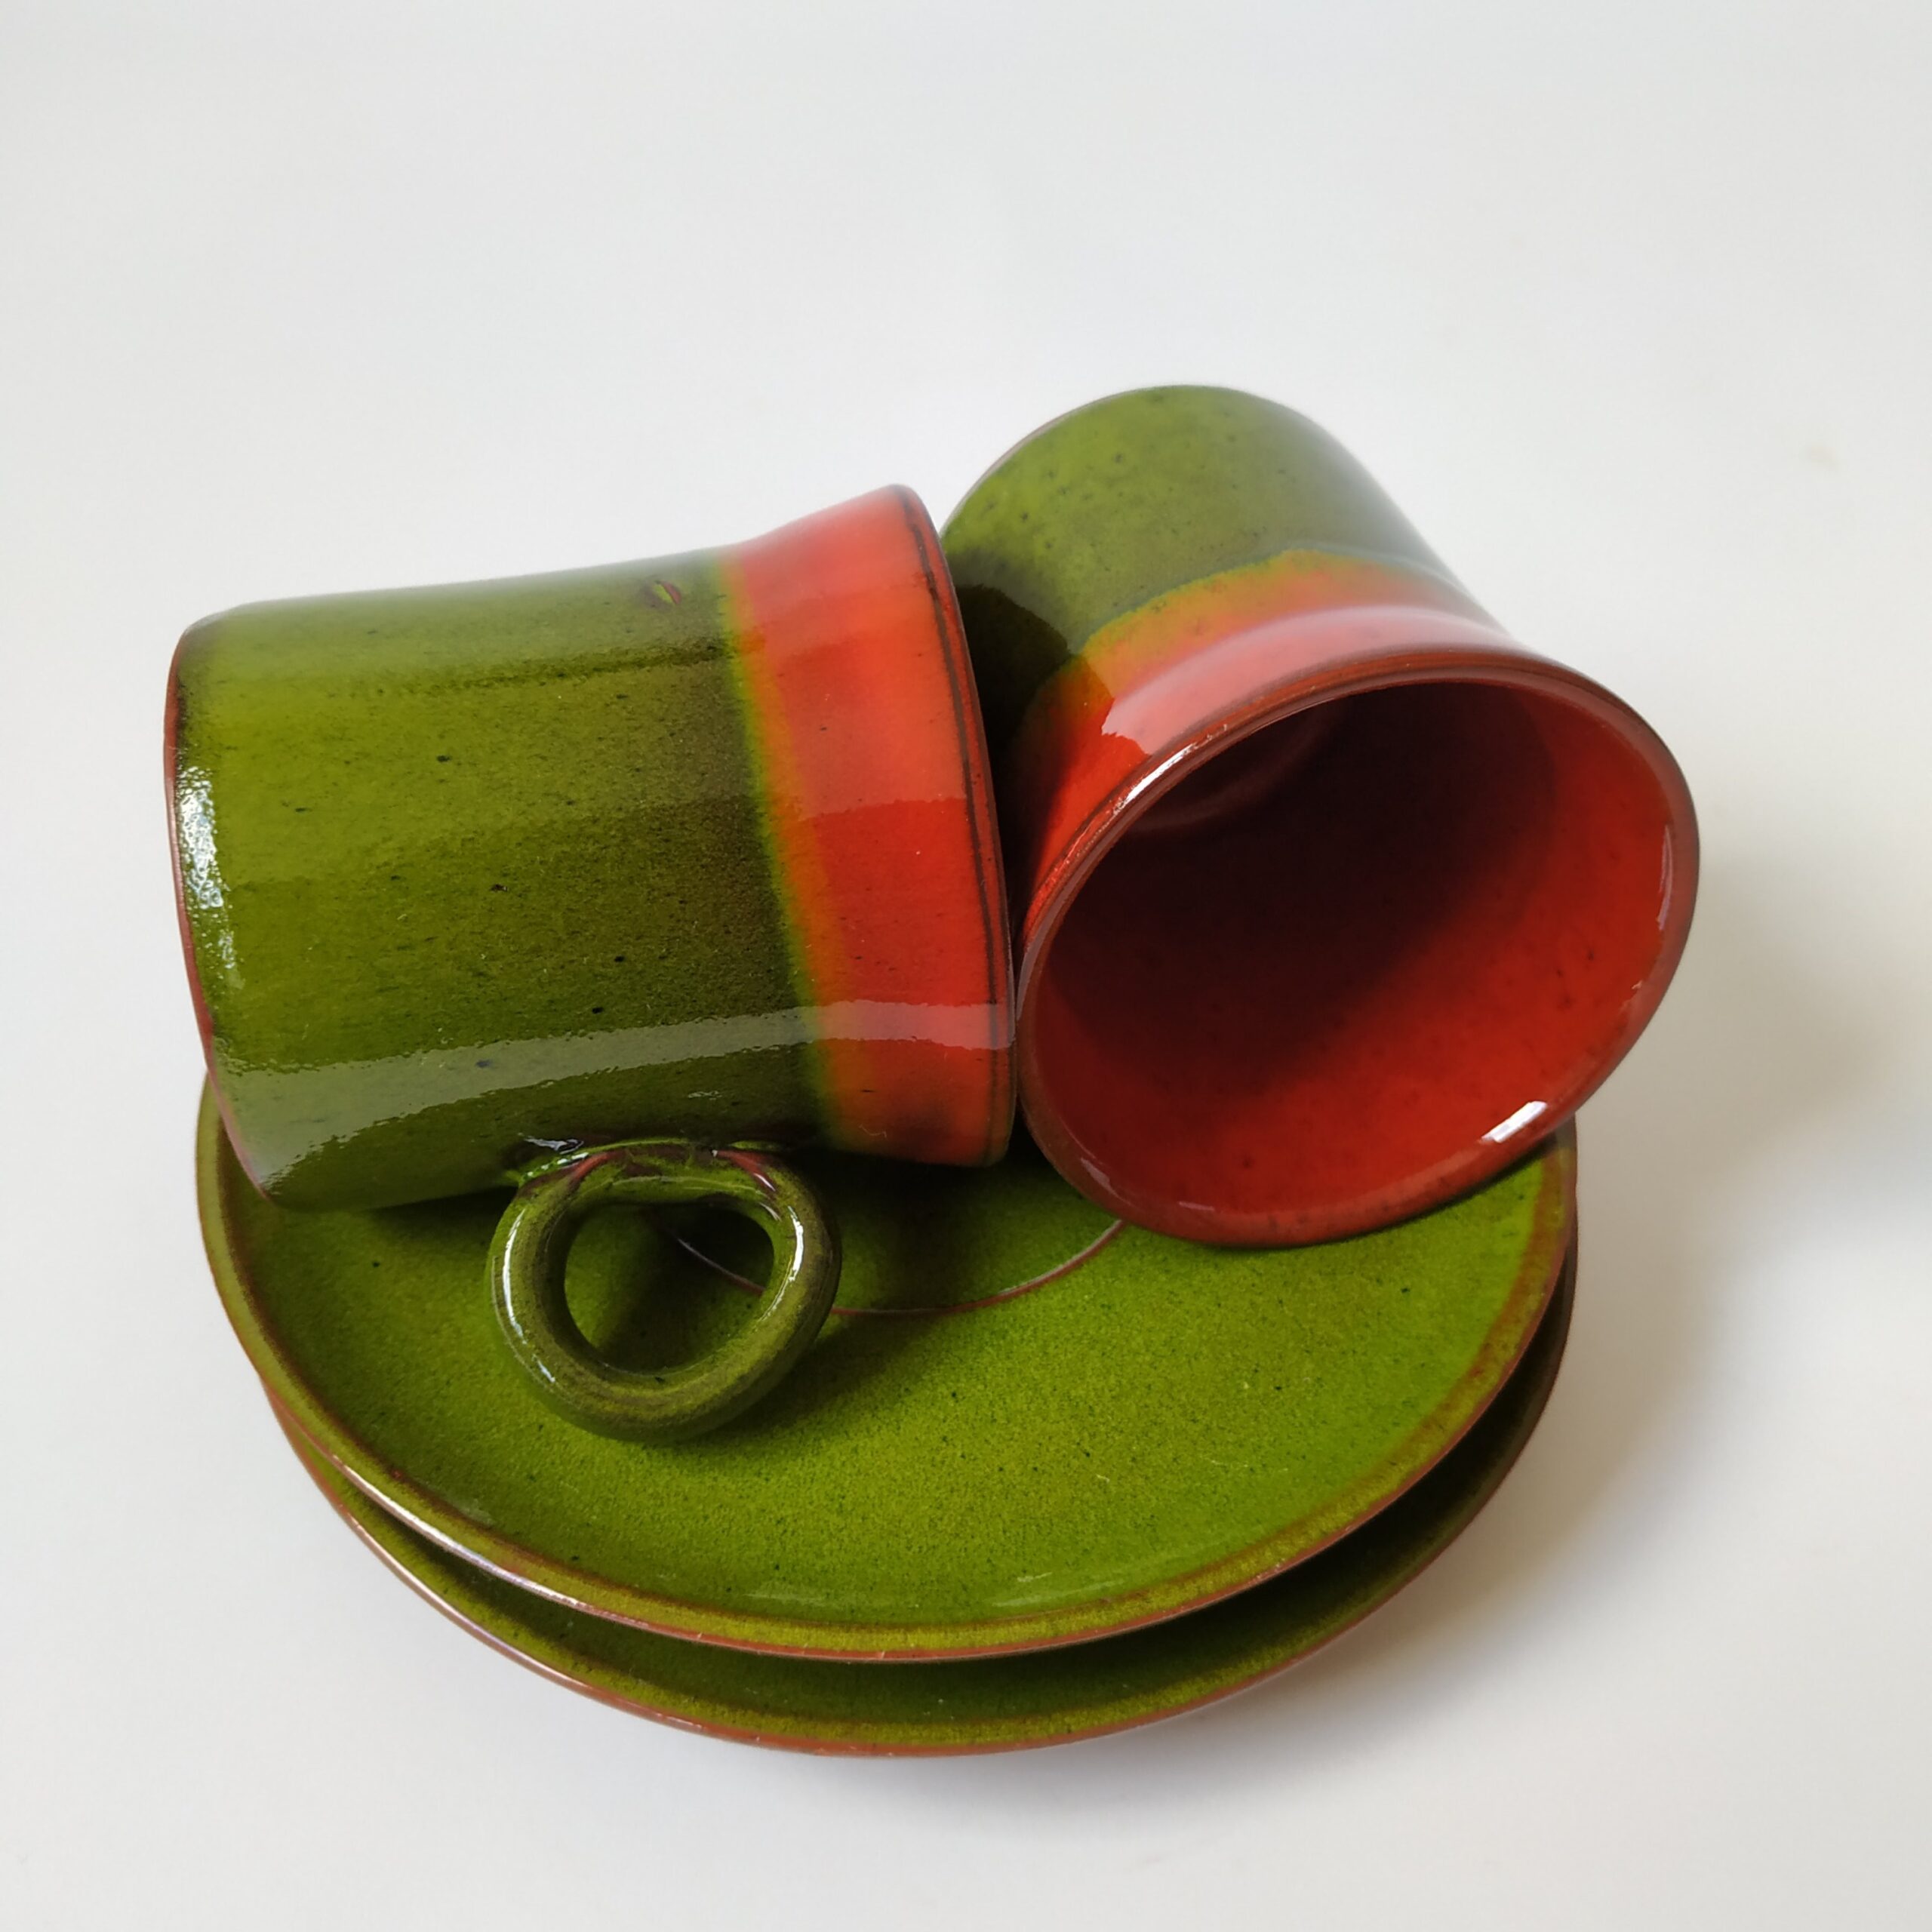 Espressokopjes met schotel – kleur rood-oranje-groen met een inhoud van 100 ml – 2 stuks (5)